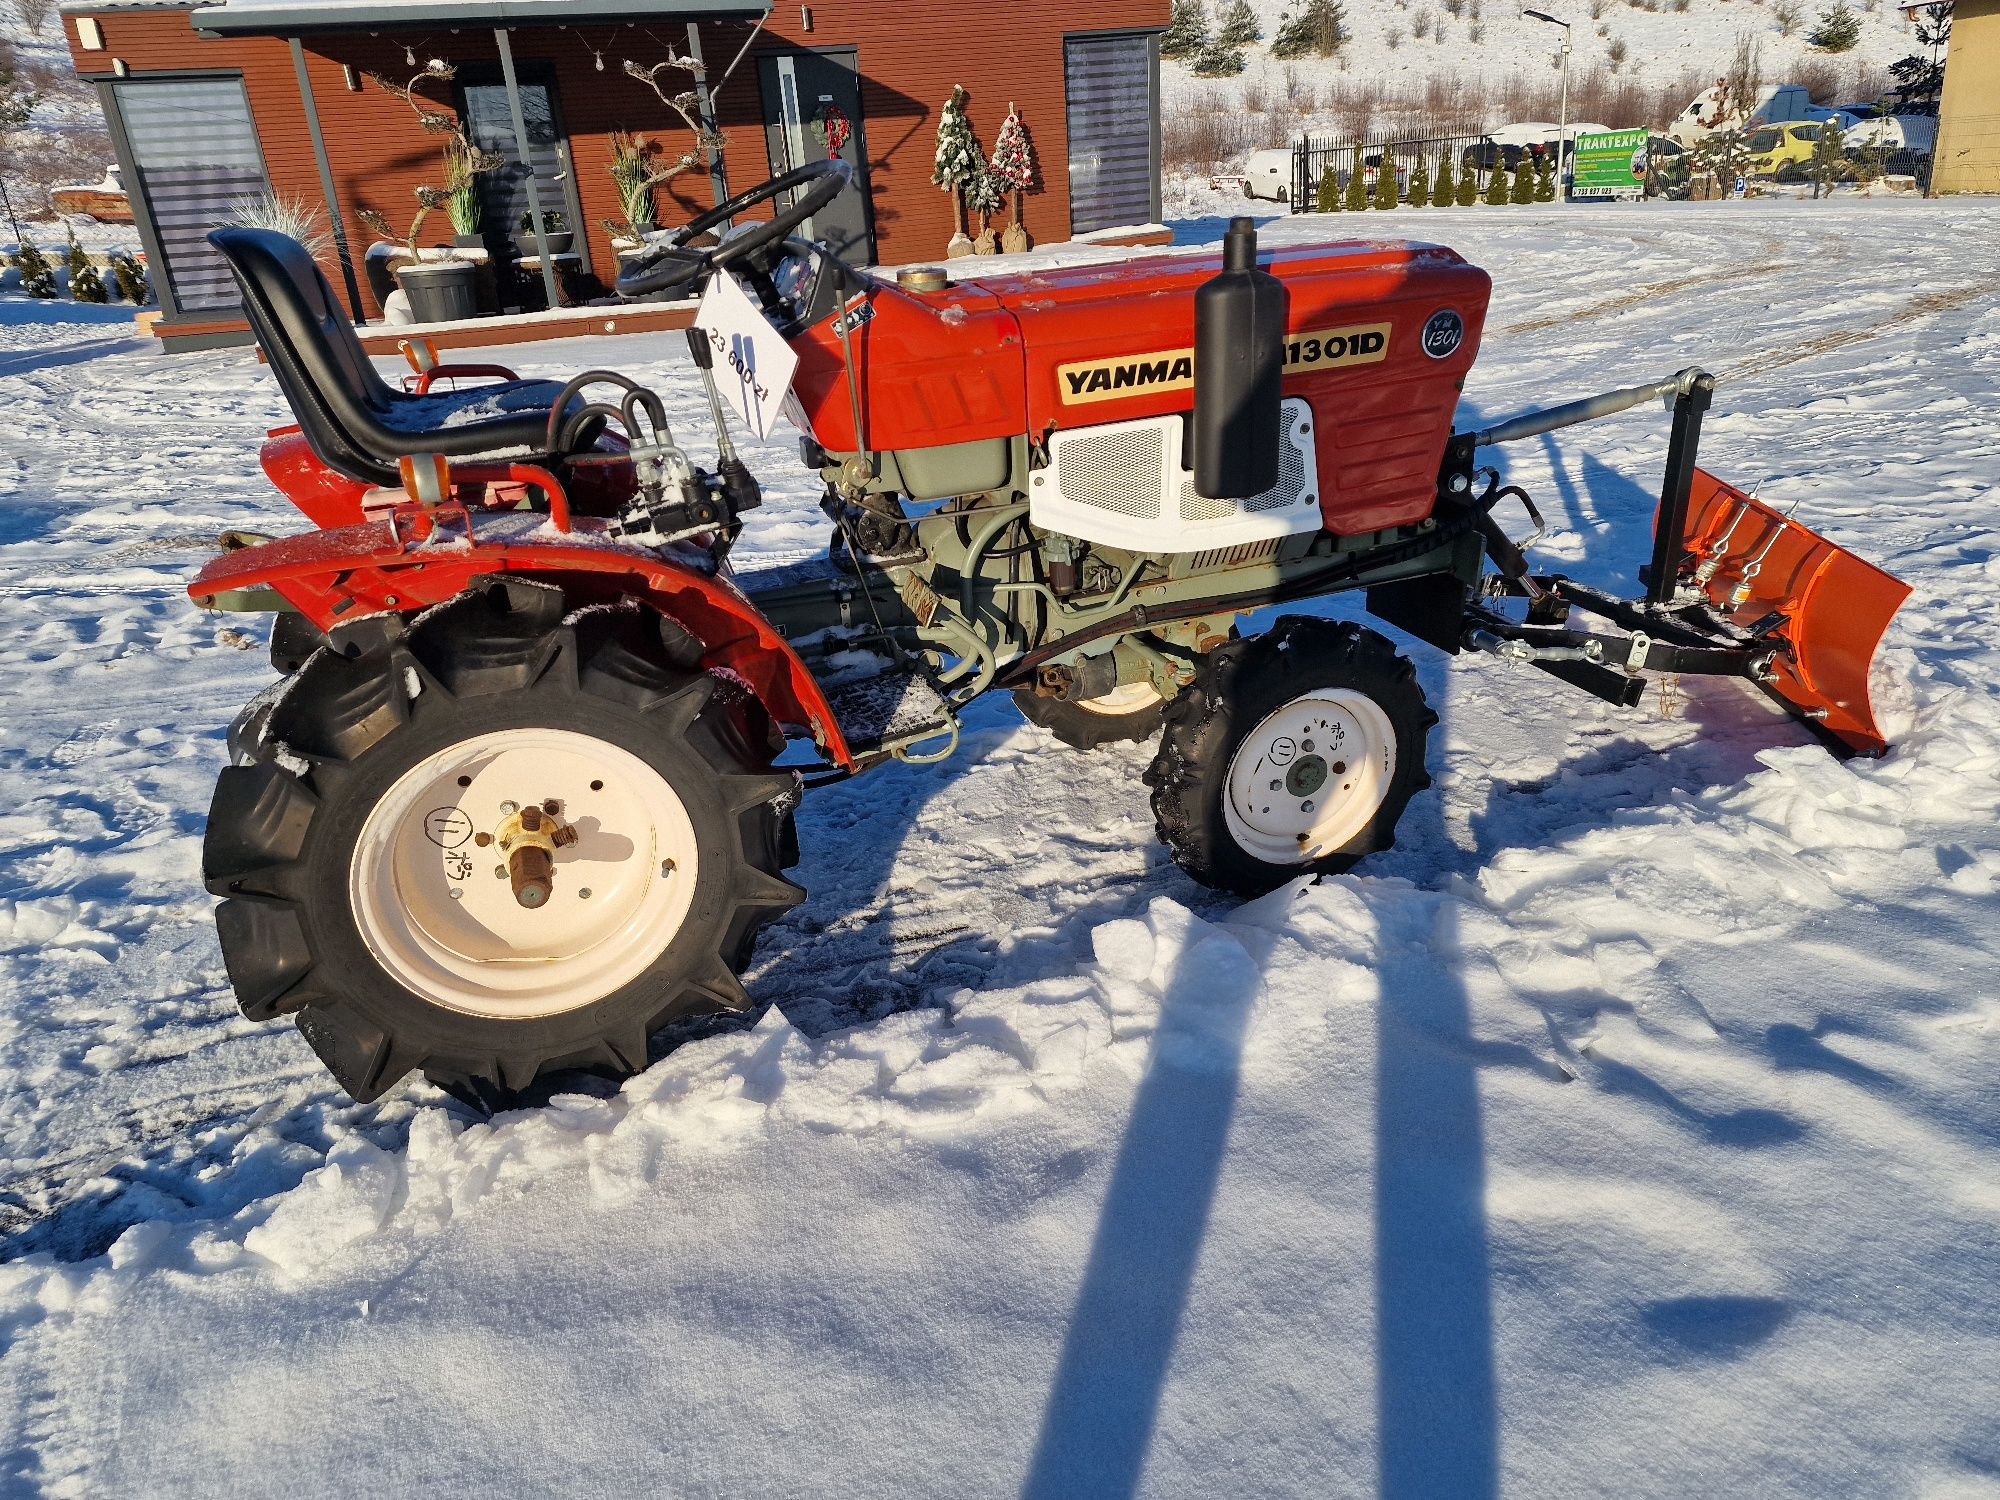 Mini Traktor Yanmar,4x4,pług do śniegu,Japoński Lniska • OLX.pl